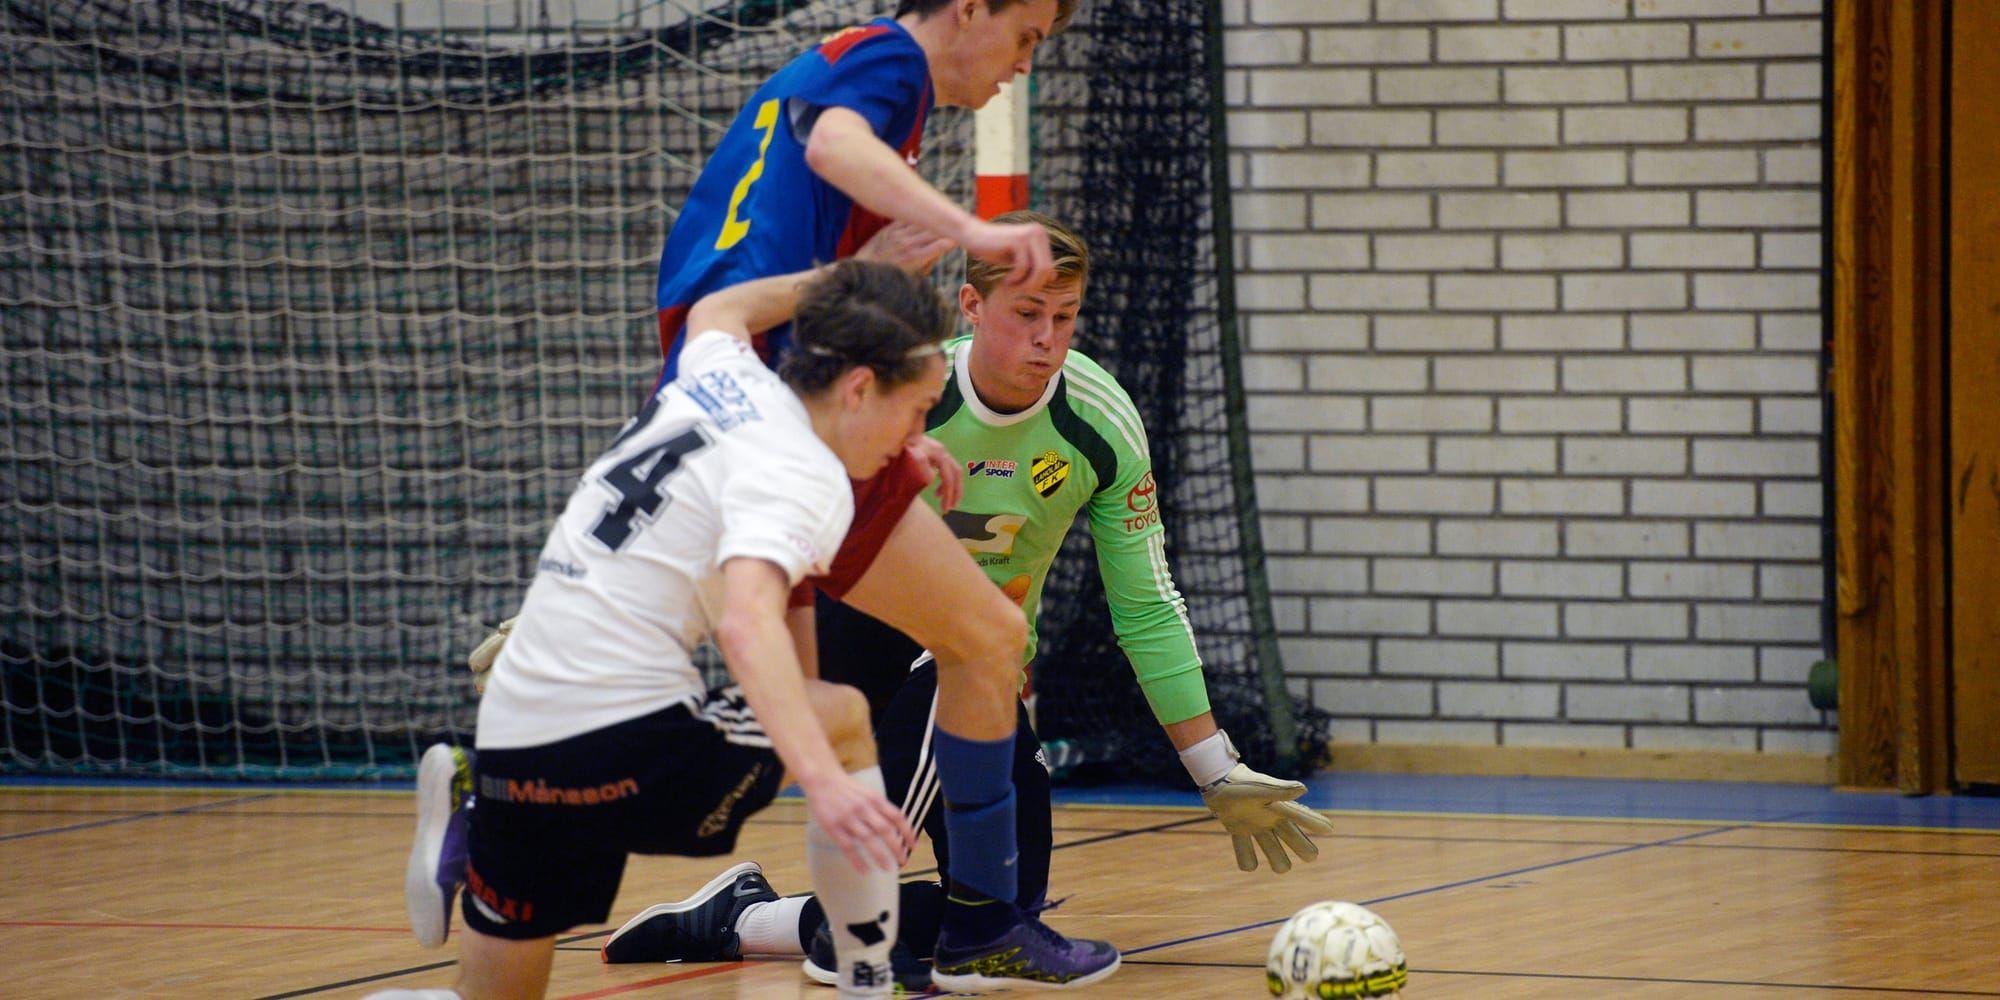 Innesport. Det finns över 150 000 registrerade futsalspelare i Sverige. I vinter startar det första seriespelet på distriktsnivå i Halland.